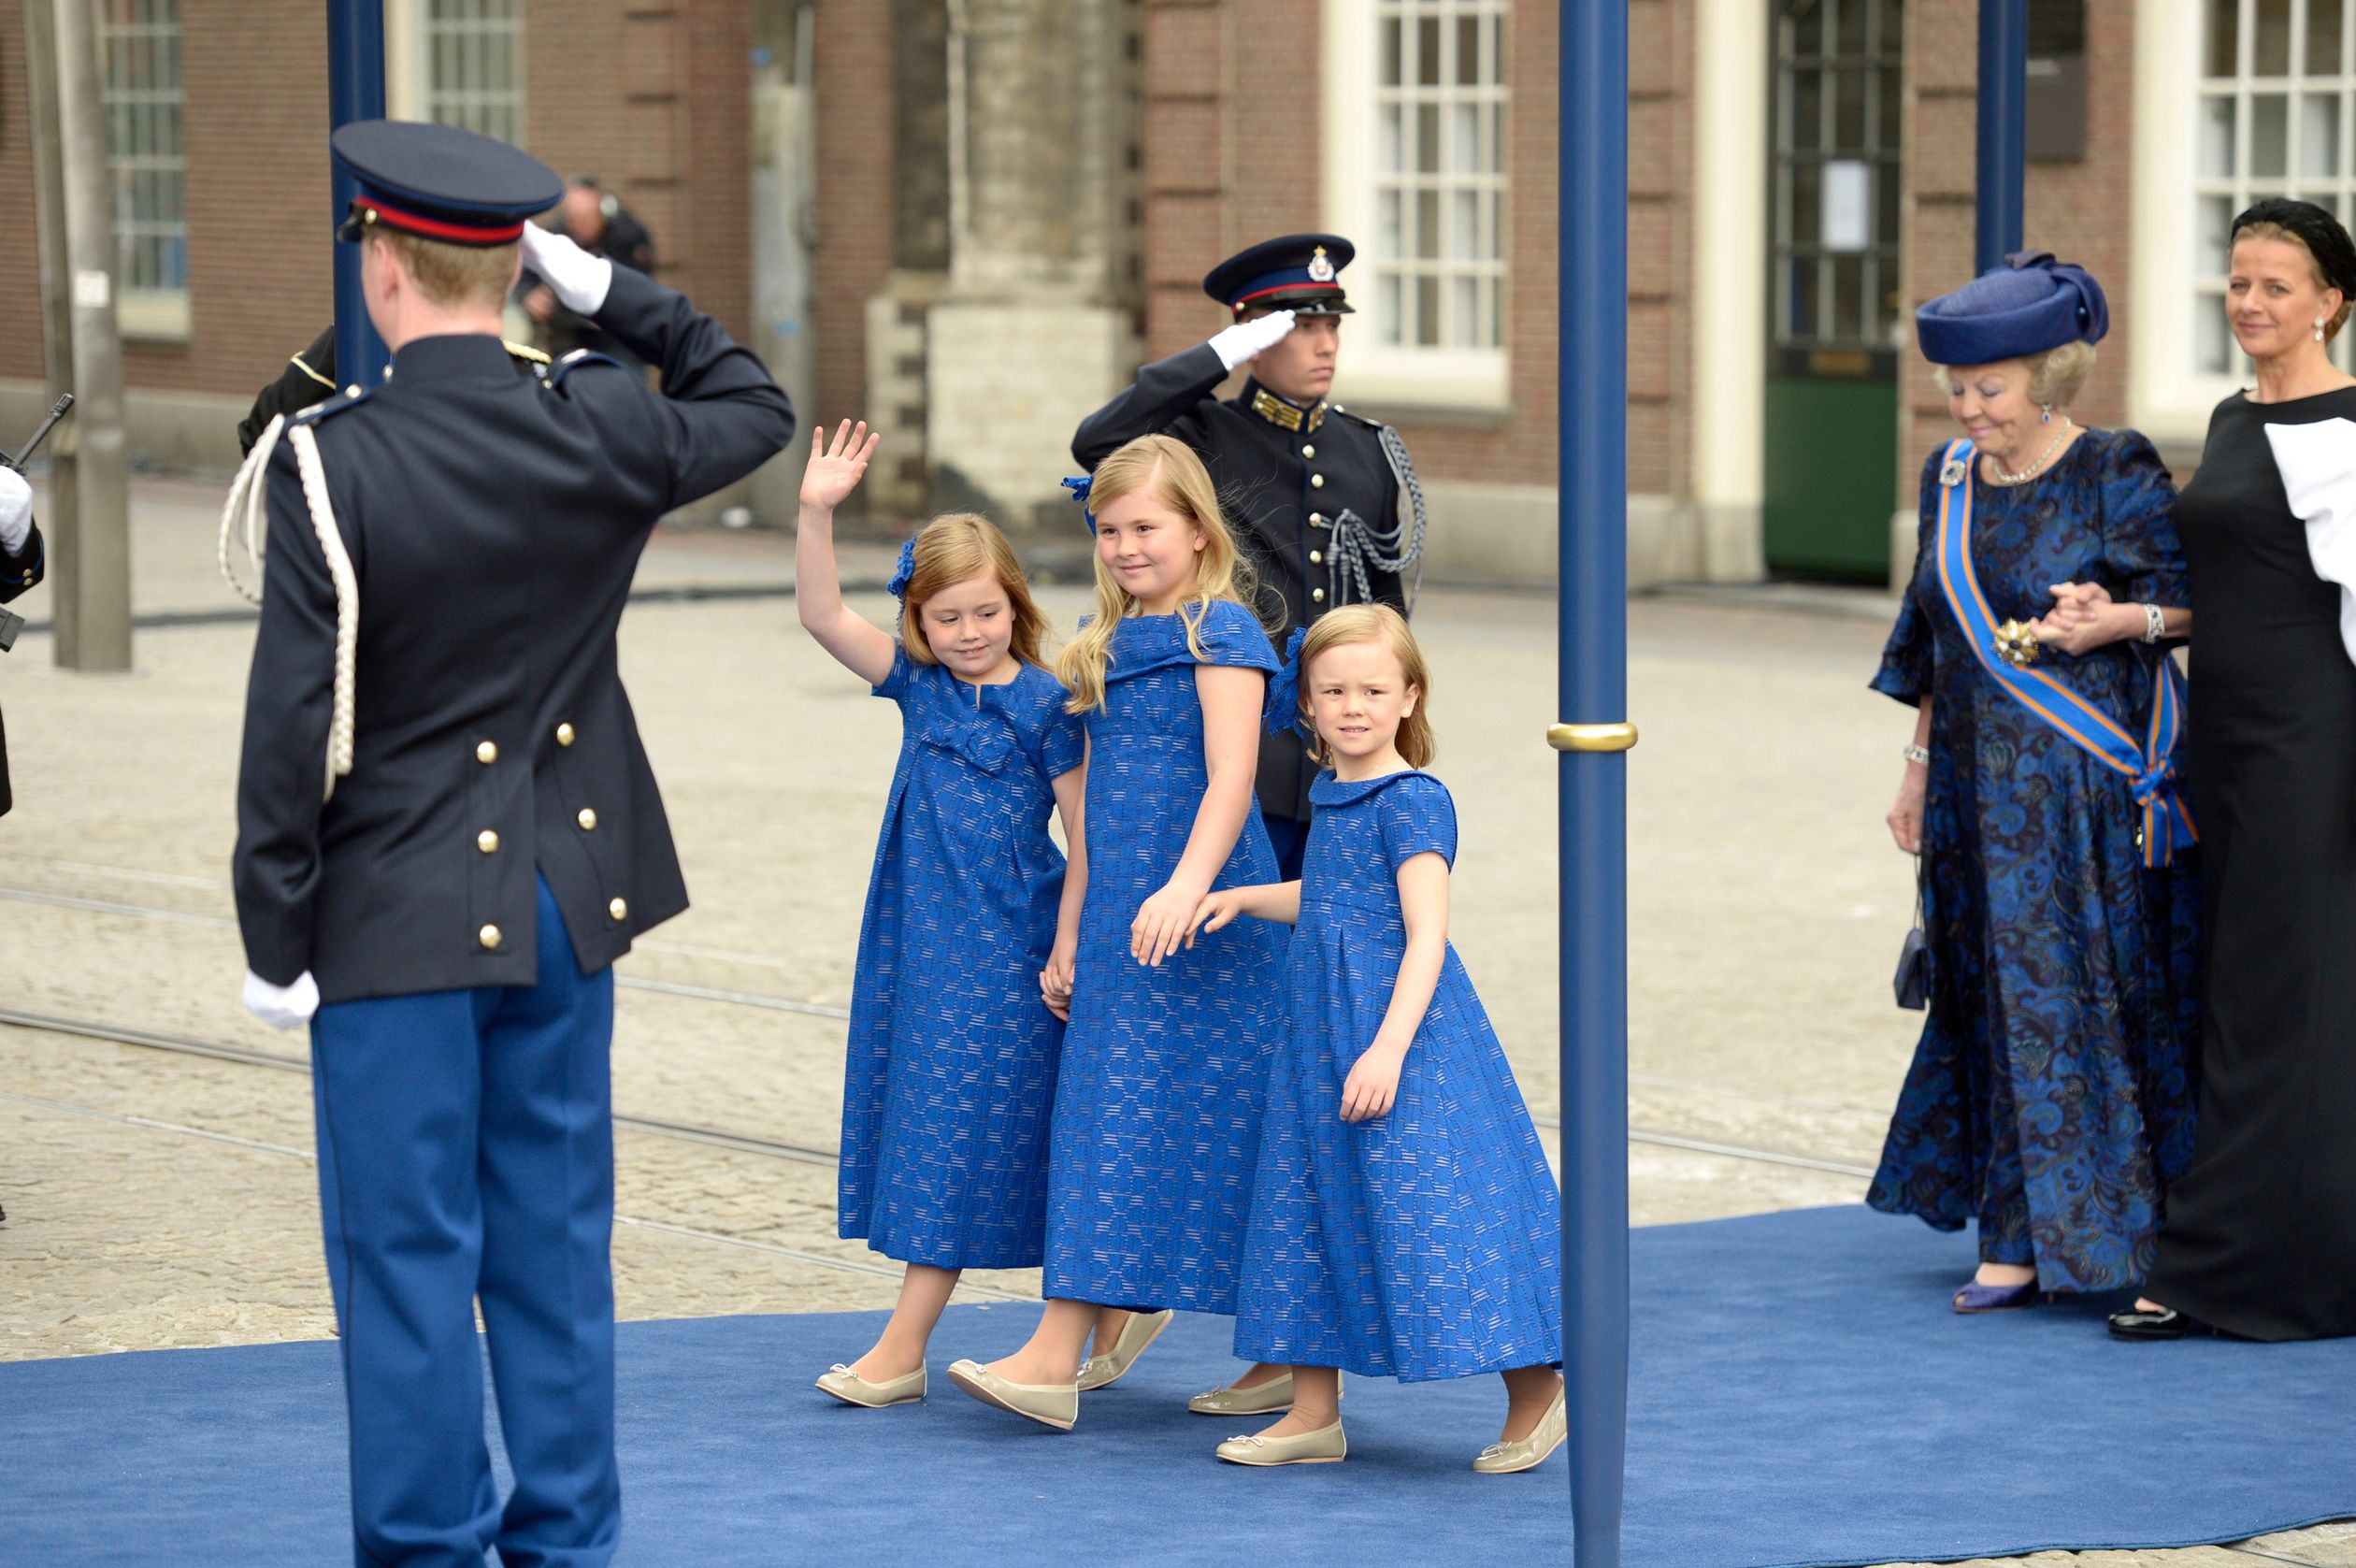 Op de dag van de inhuldiging van hun vader (2013), zien we de prinsesjes weer in dezelfde jurkjes.